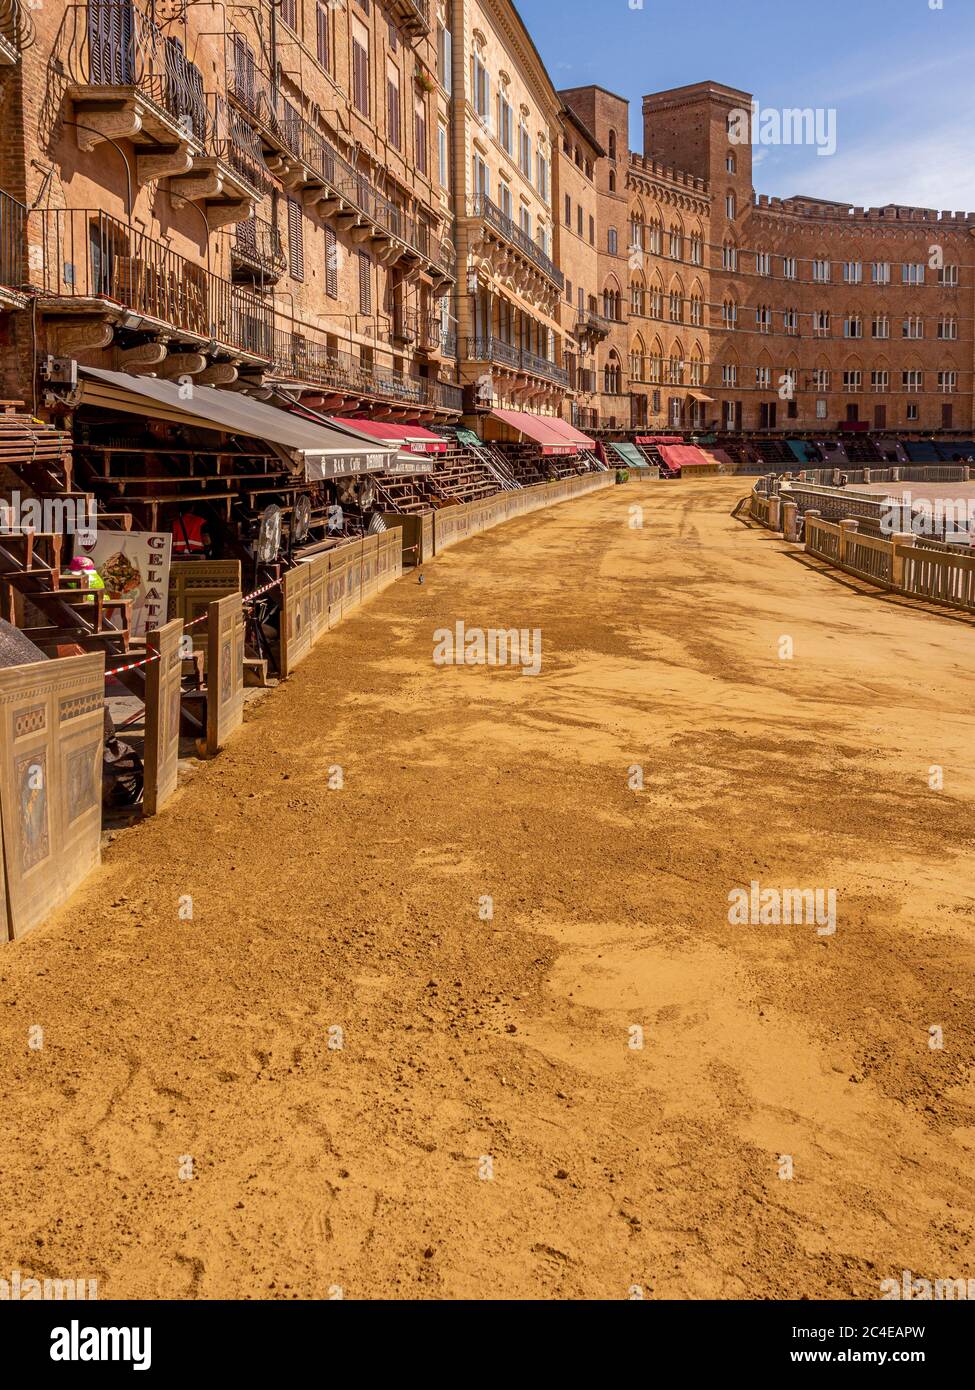 Piazza del campo coperta di uno strato di sabbia in preparazione alla gara del Palio. Siena Italia. Foto Stock